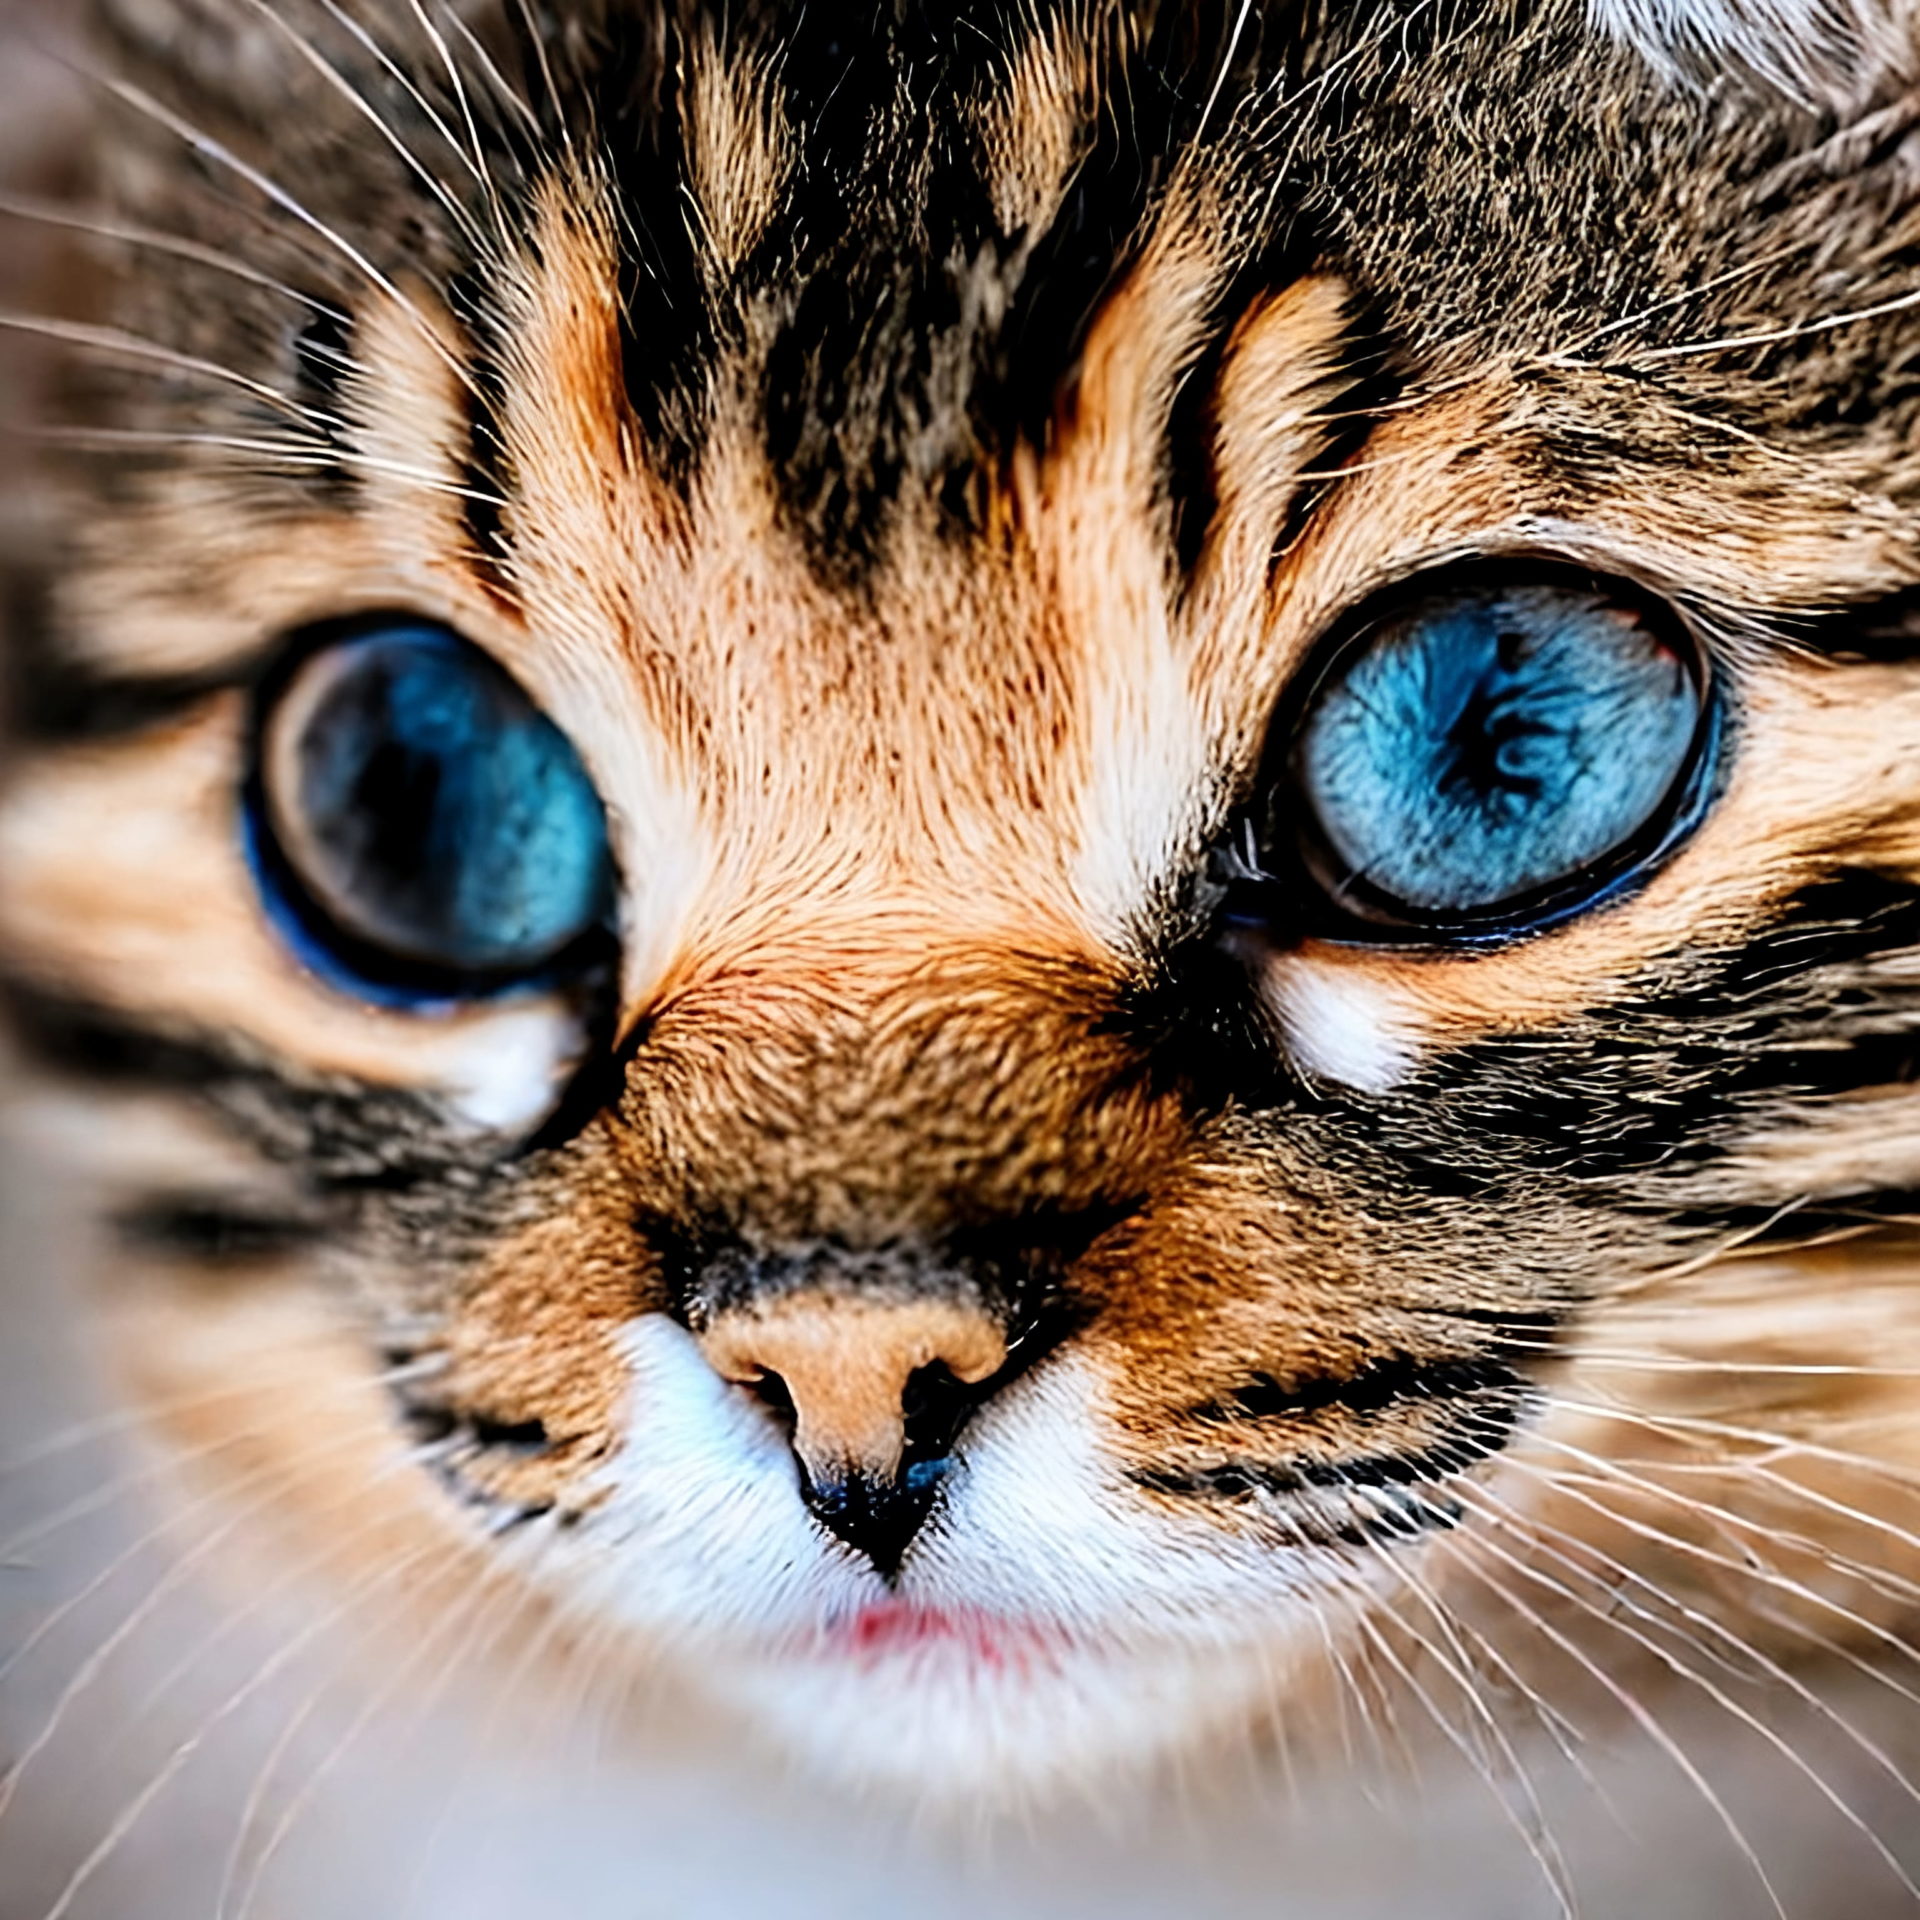 Very cute kitten close-up